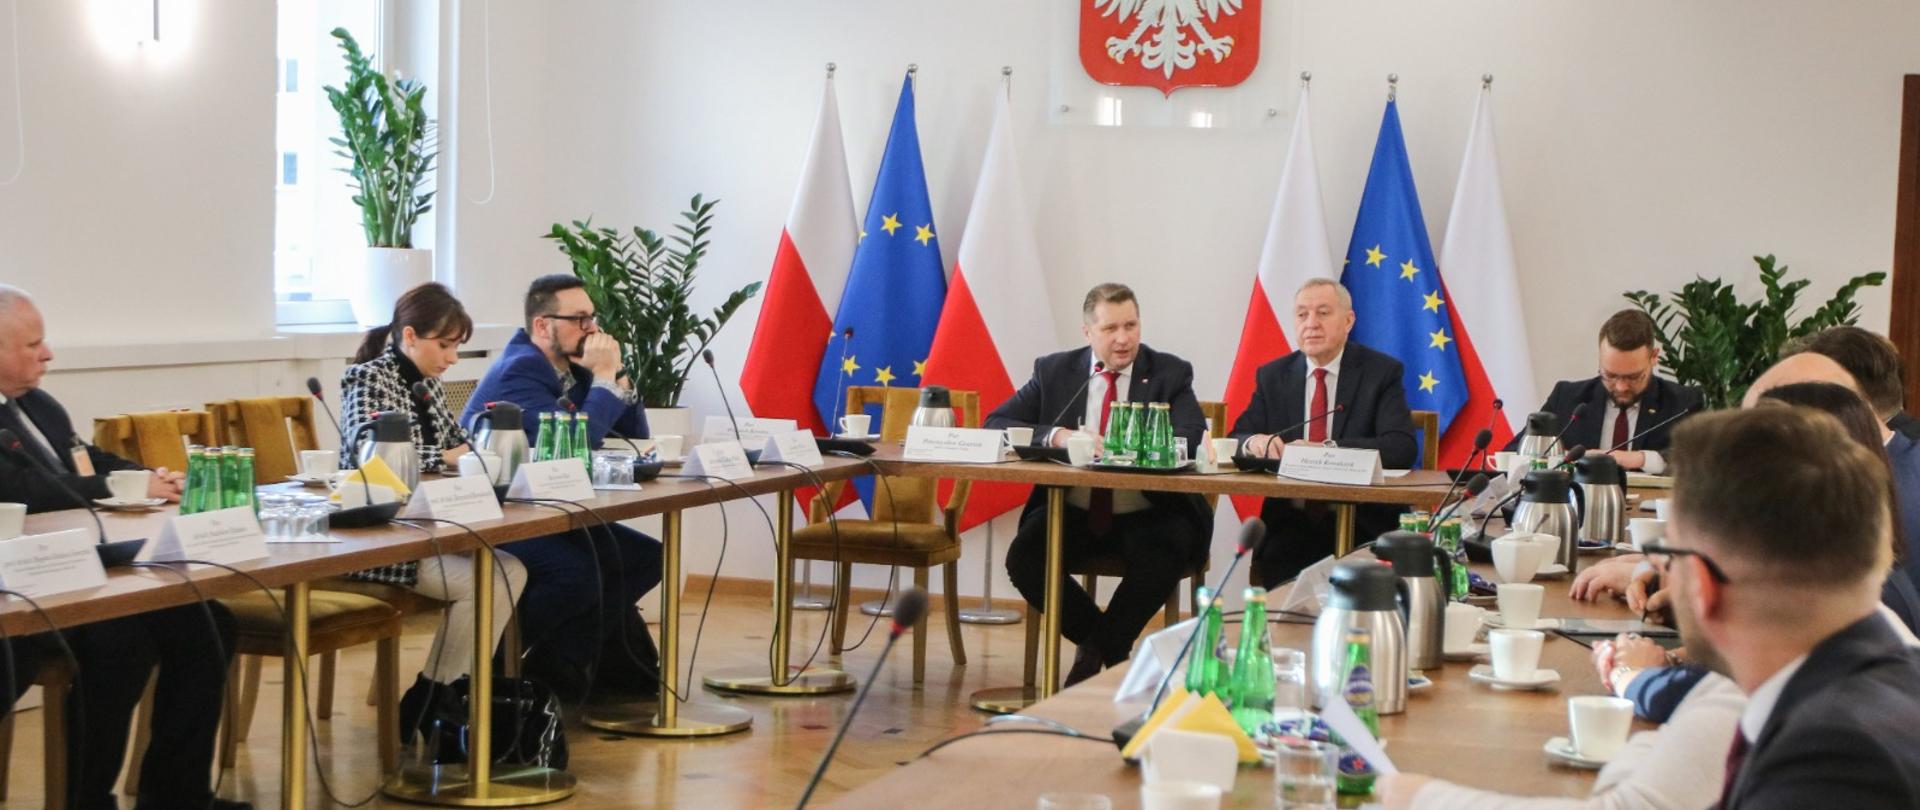 Widok z boku na niewielka salę, przy ustawionych w prostokąt stołach siedzą ludzie, u szczytu stołu siedzi minister Czarnek i mężczyzna w garniturze, za nimi flagi Polski i UE, dalej na ścianie godło.